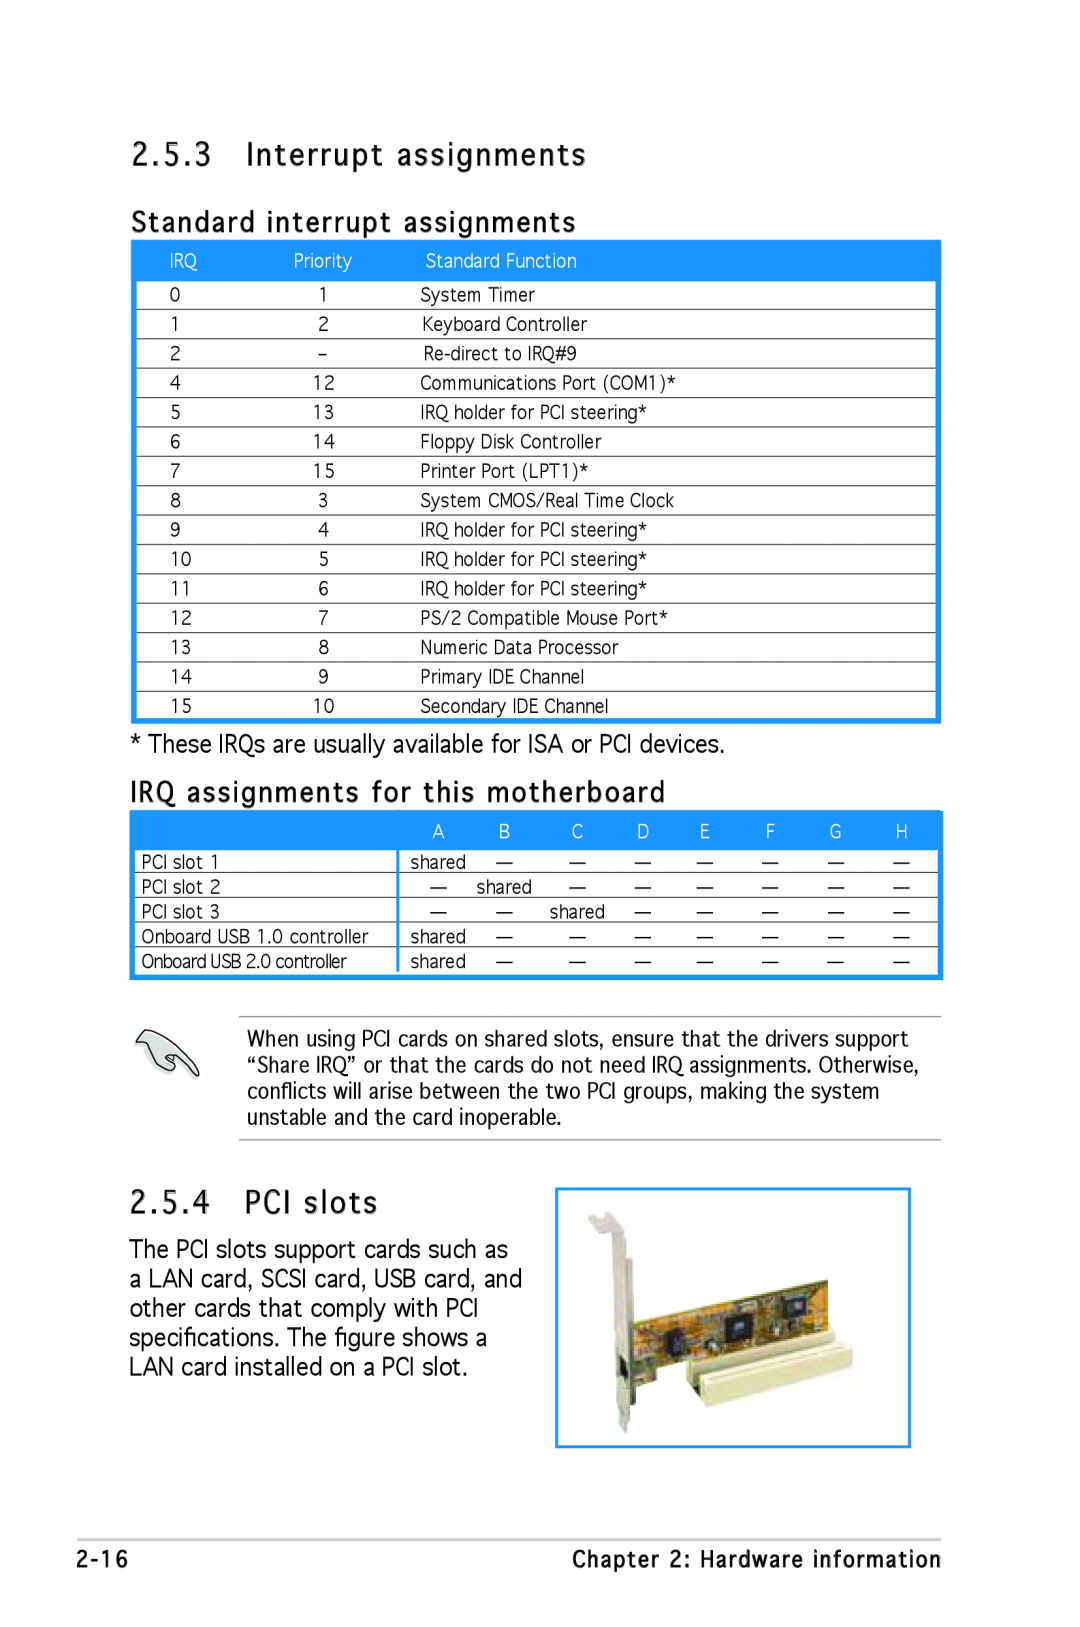 Asus A8N-SLI SE manual 2.5.3, Interrupt assignments, PCI slots, Standard interrupt assignments 